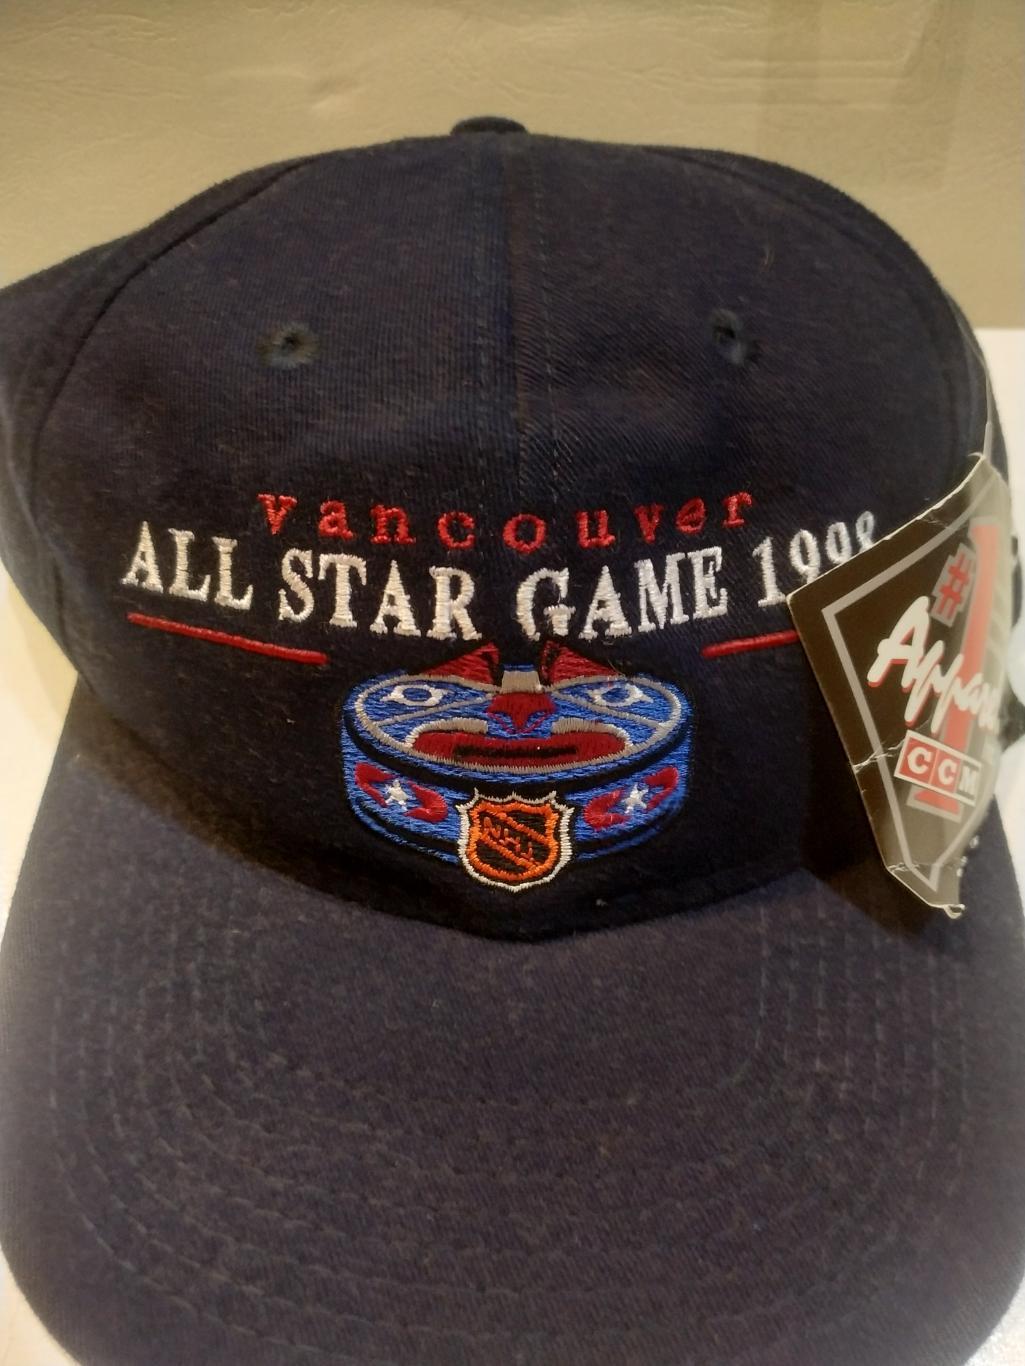 ХОККЕЙ БЕЙСБОЛКА МАТЧ ЗВЕЗД ВАНКУВЕР НХЛ 1998 NHL ALL STAR GAME VANCOUVER